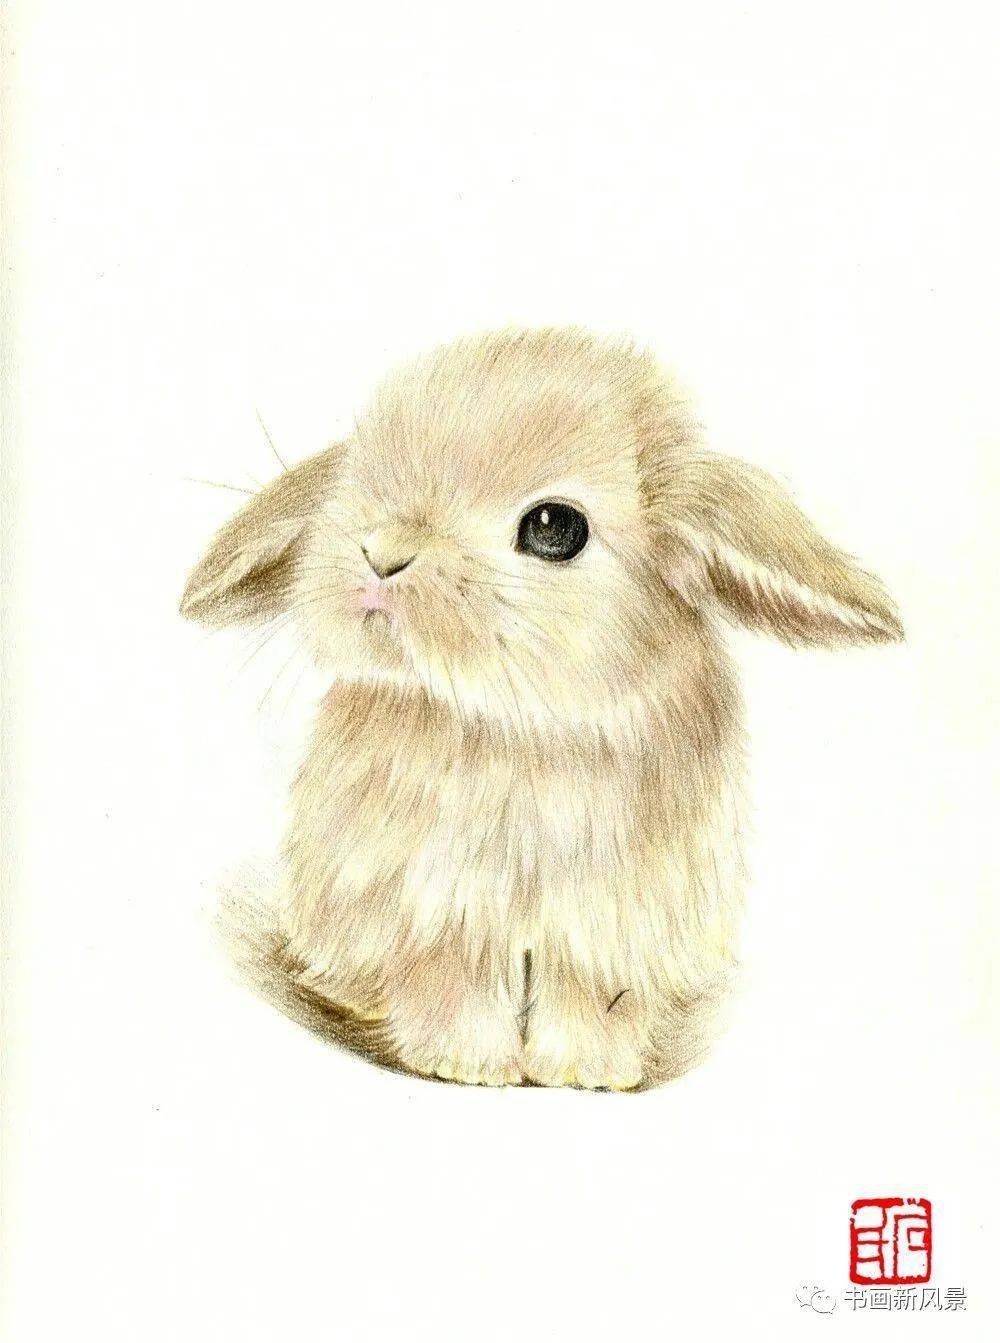 彩铅小兔子最萌图片